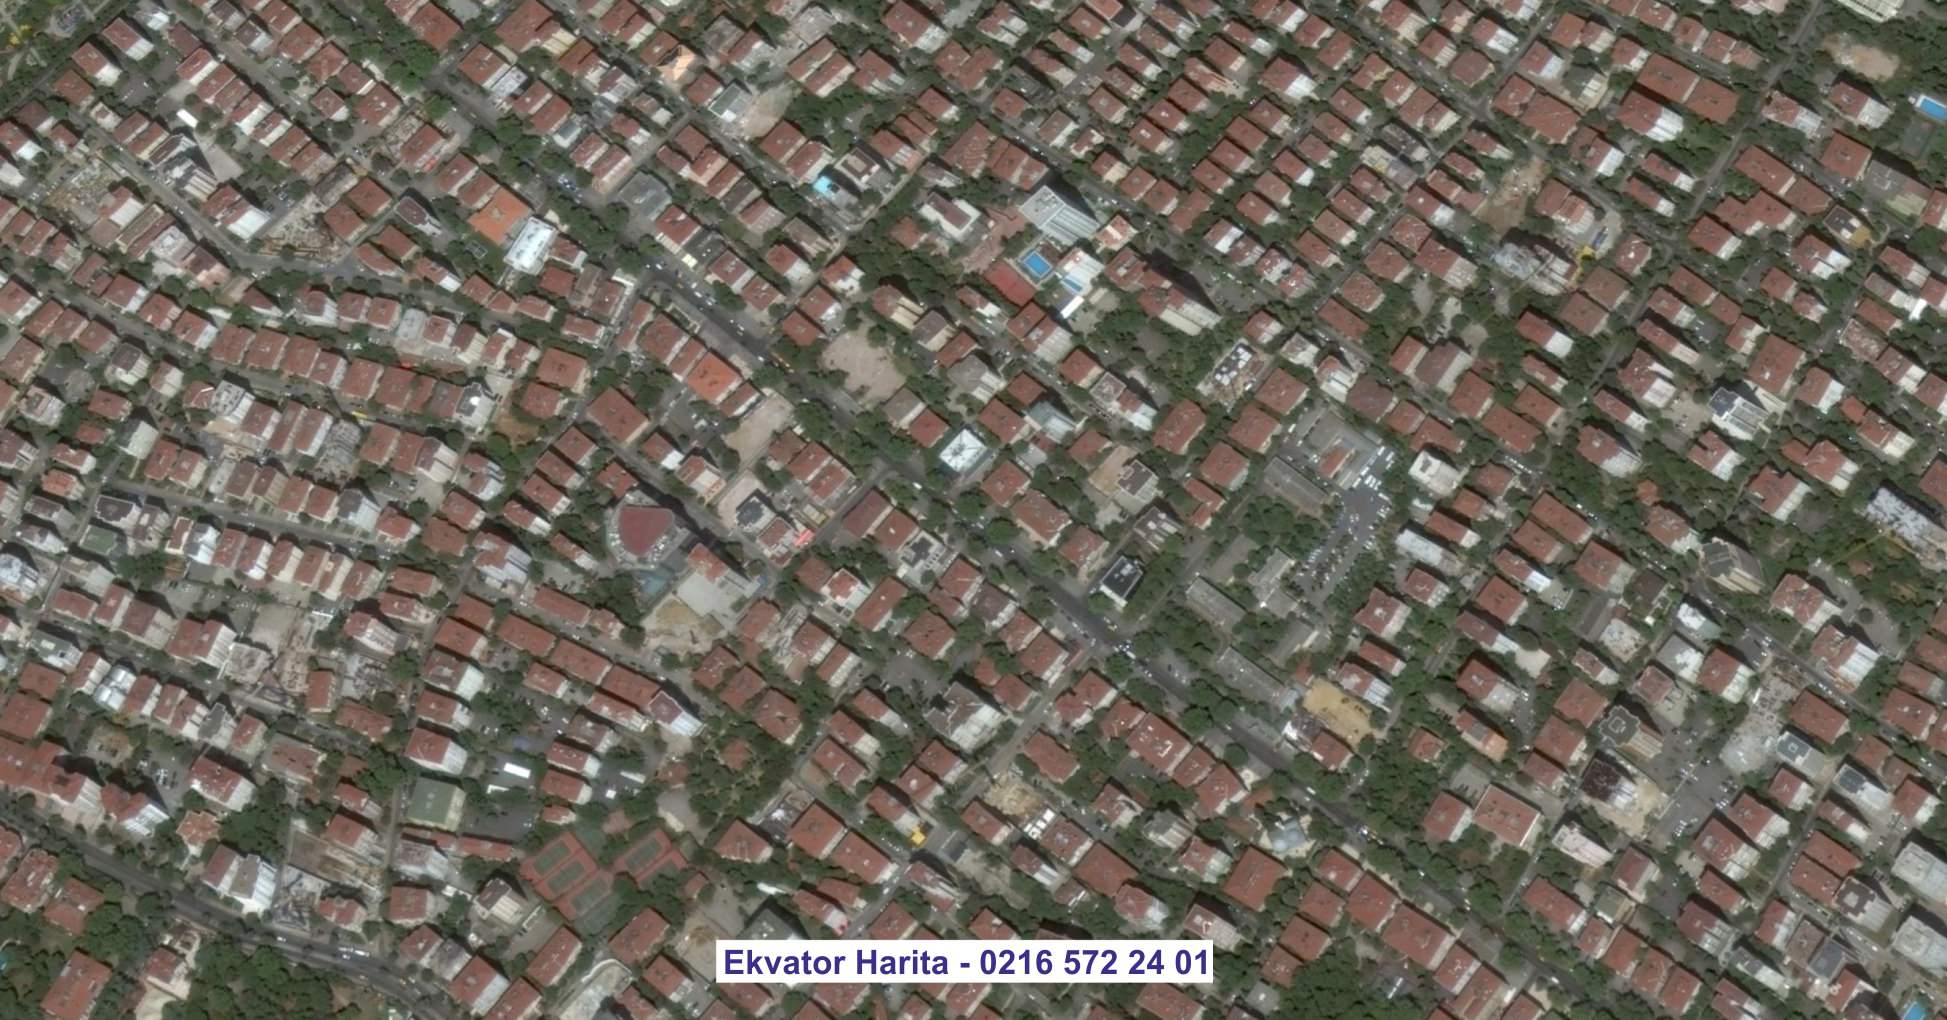 Cerablus Uydu Görüntüsü Örnek Fotoğrafı